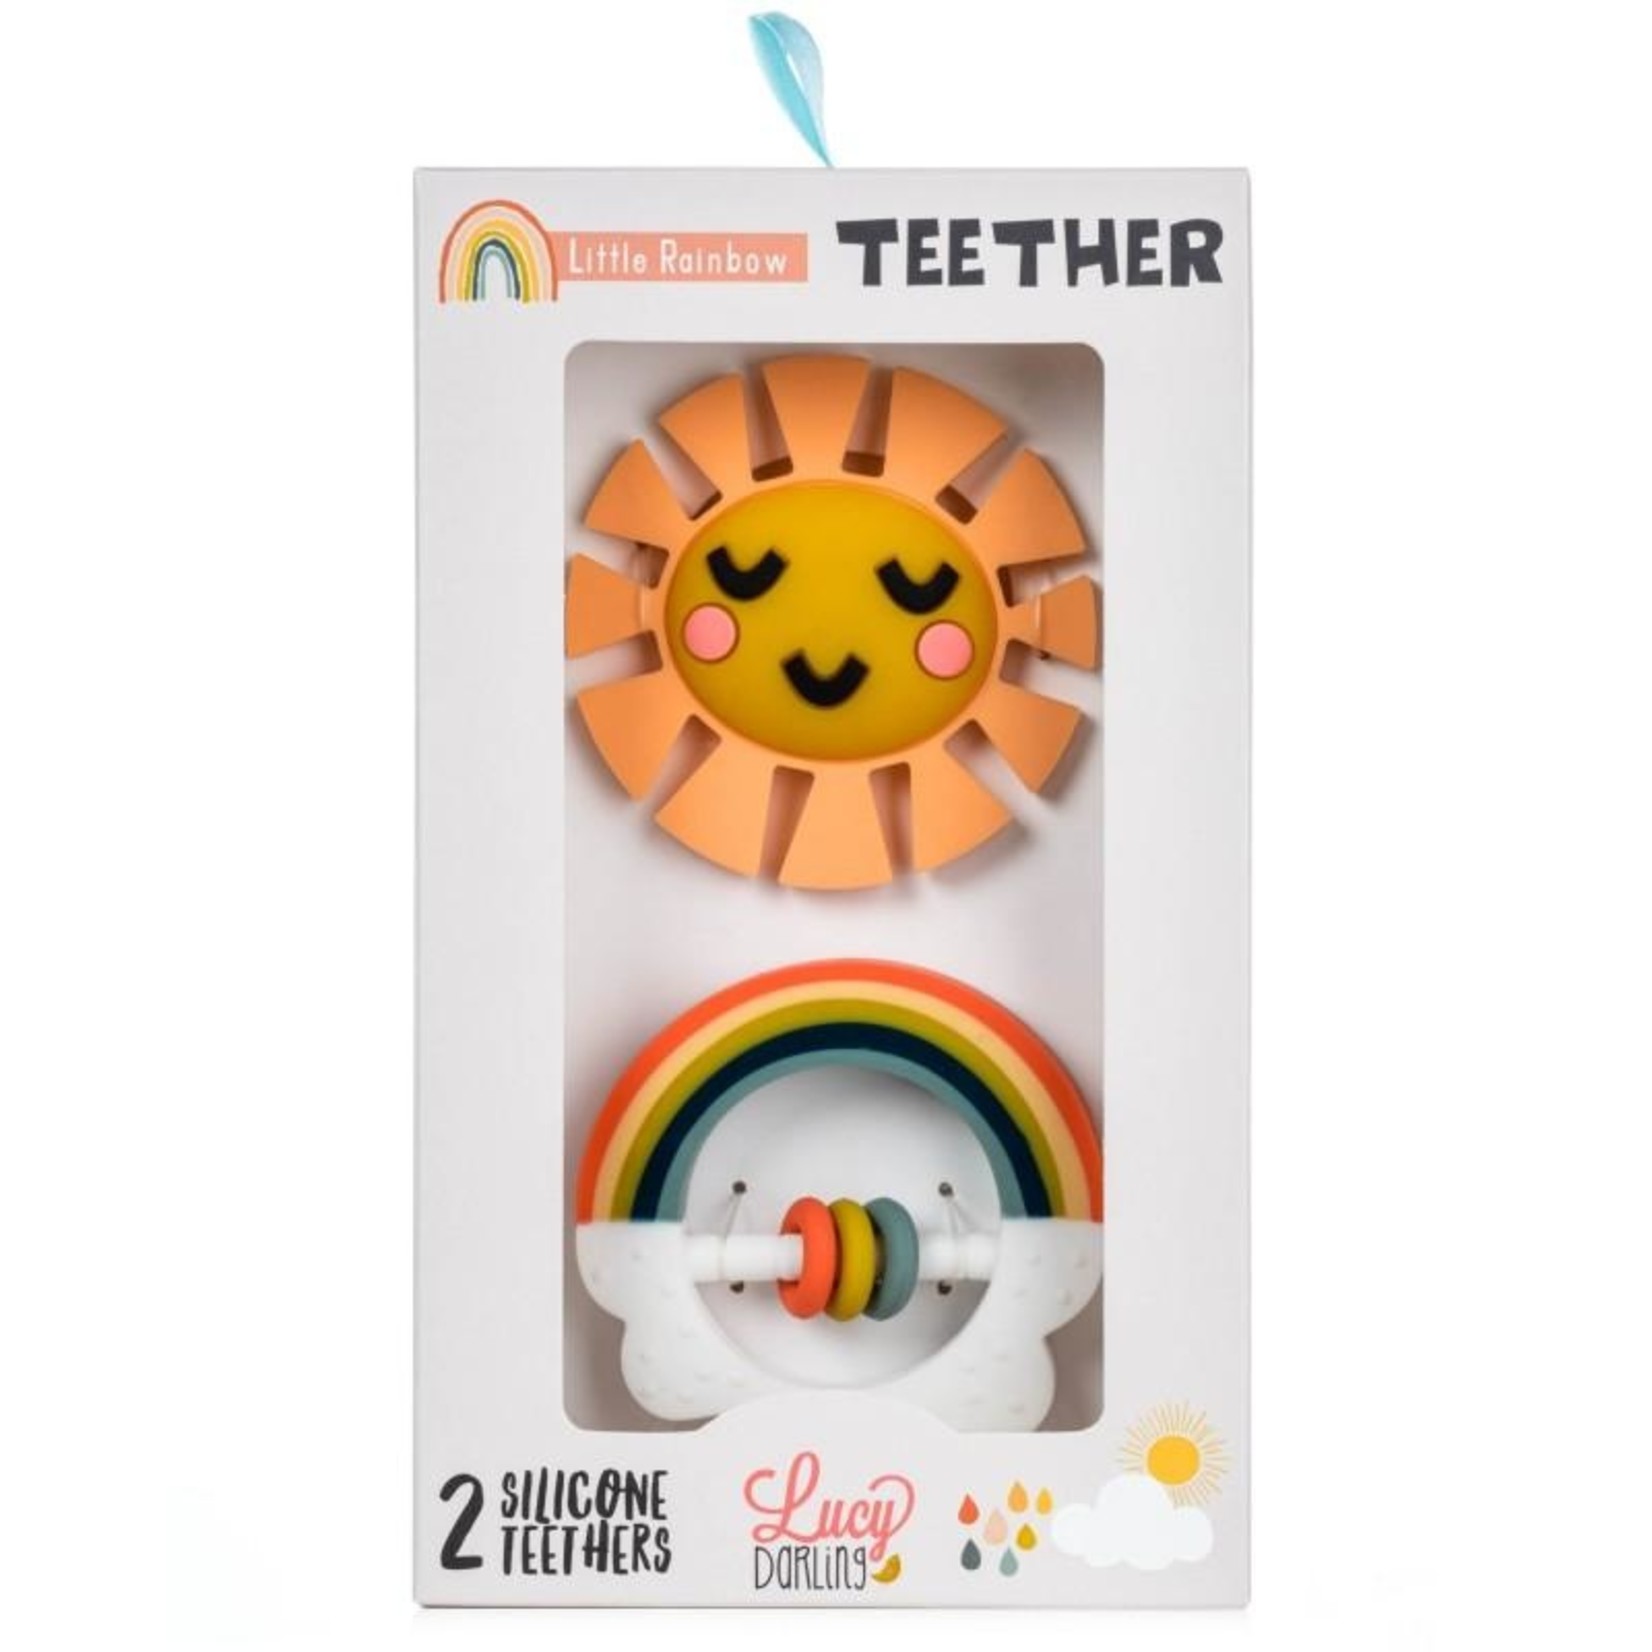 Little Rainbow Teether Set